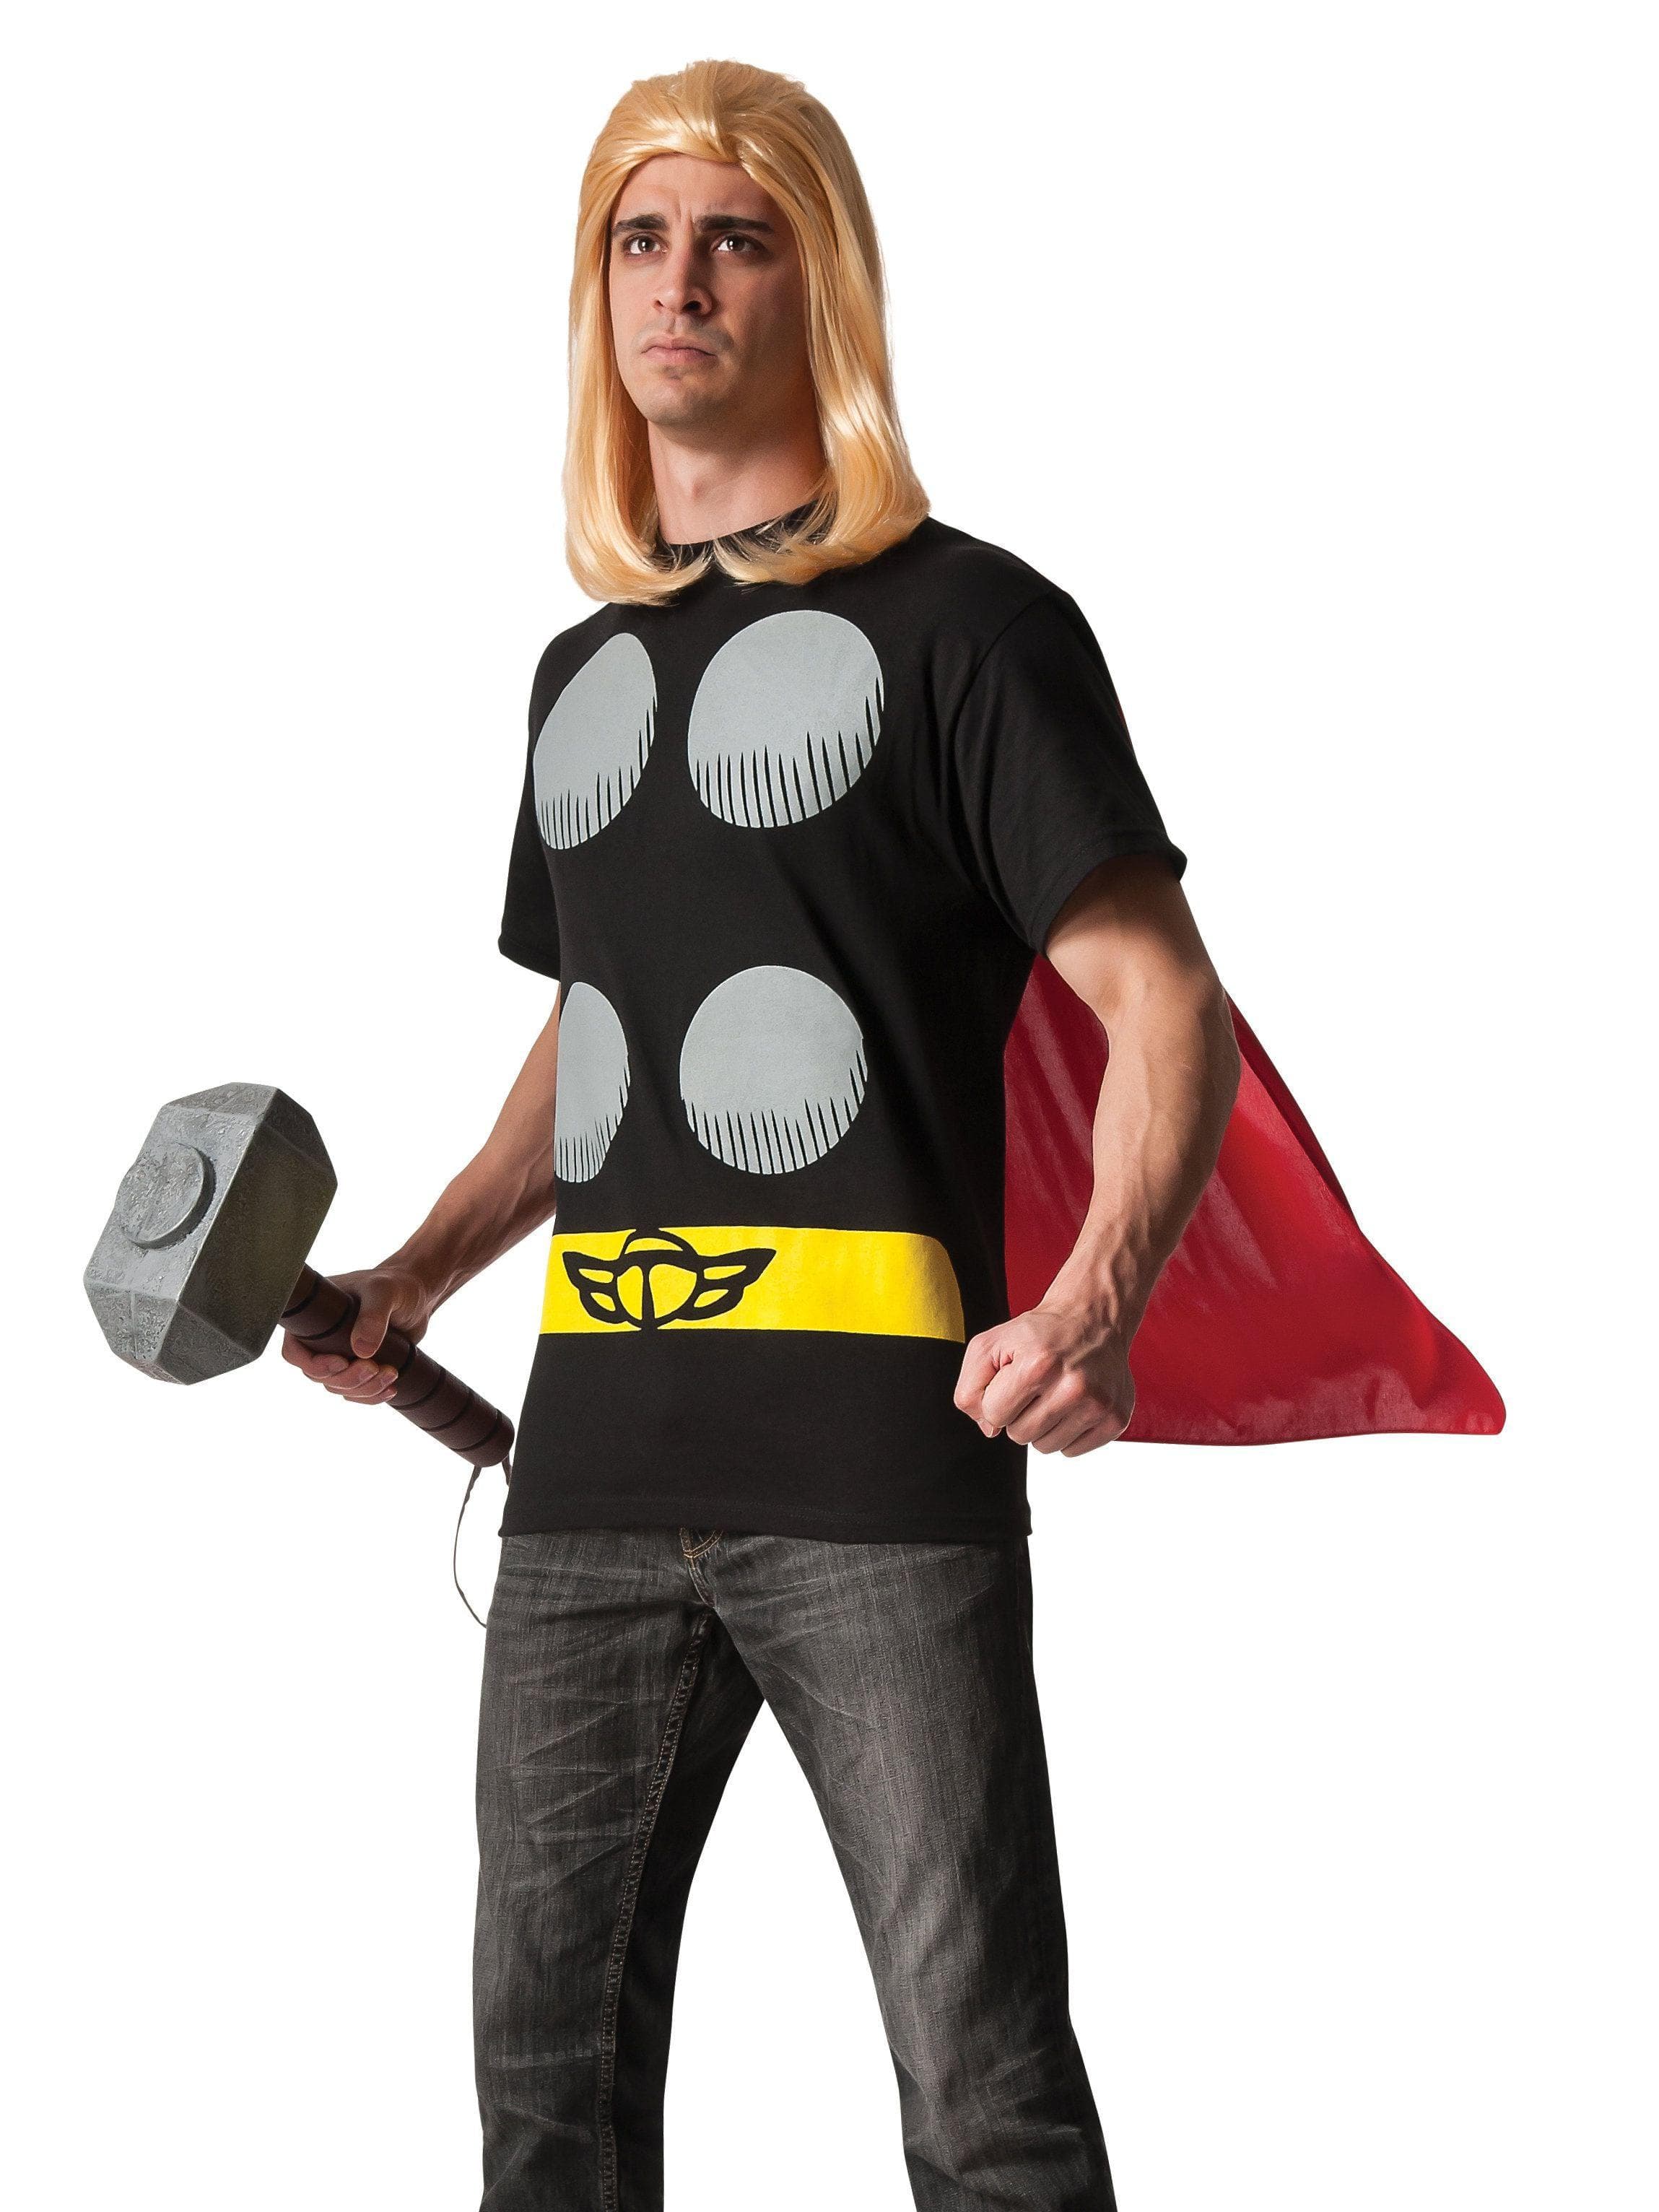 Adult Avengers Thor Costume - costumes.com